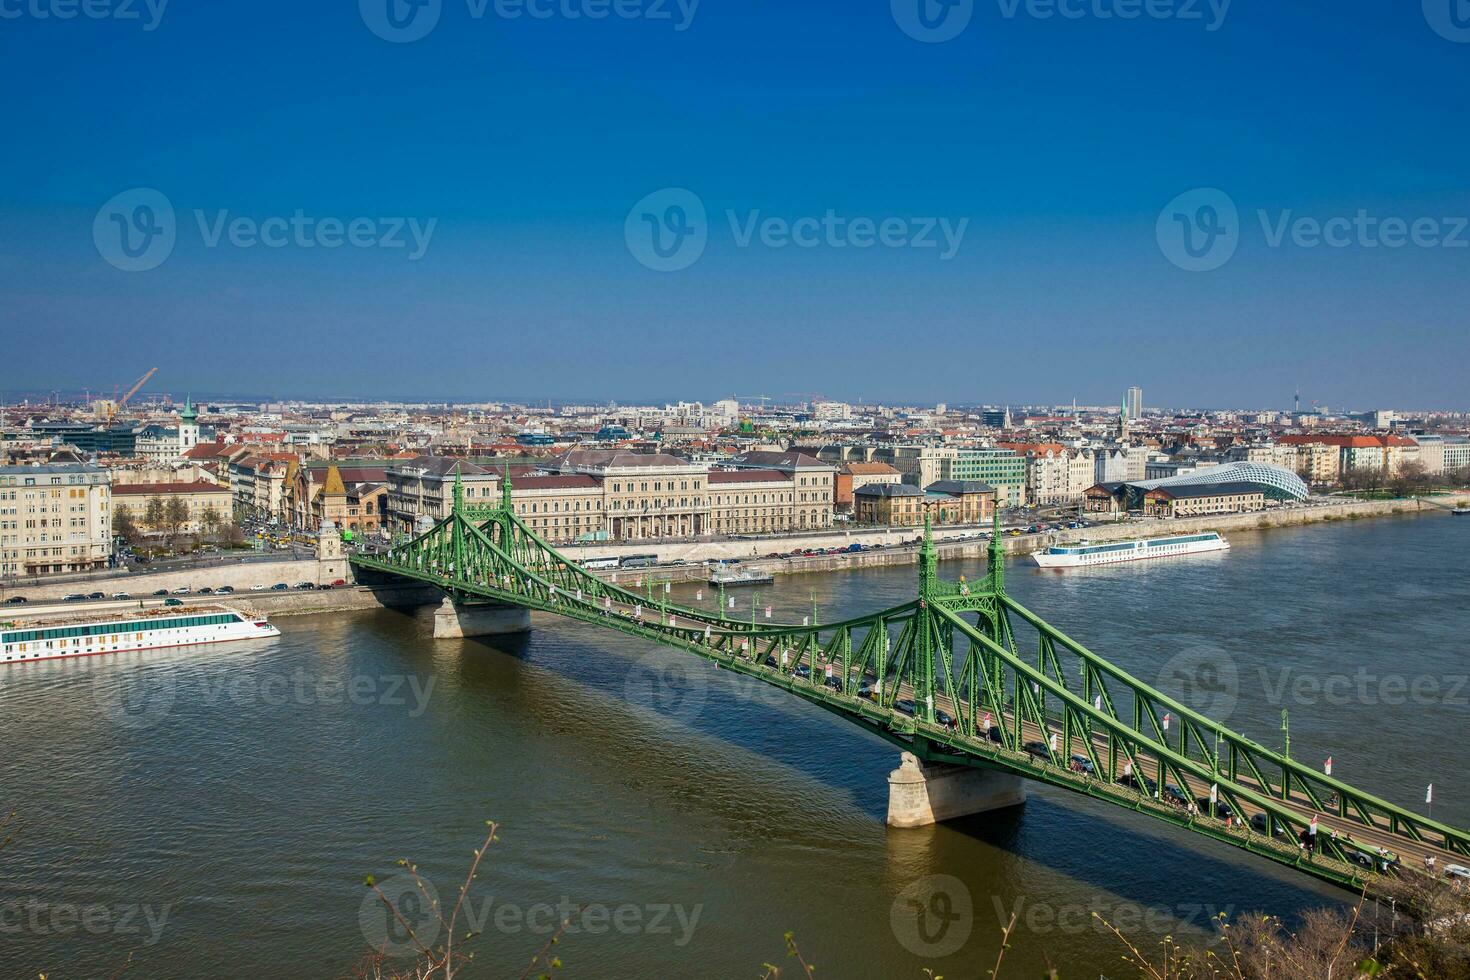 liberté pont ou liberté pont plus de le Danube rivière dans Budapest photo